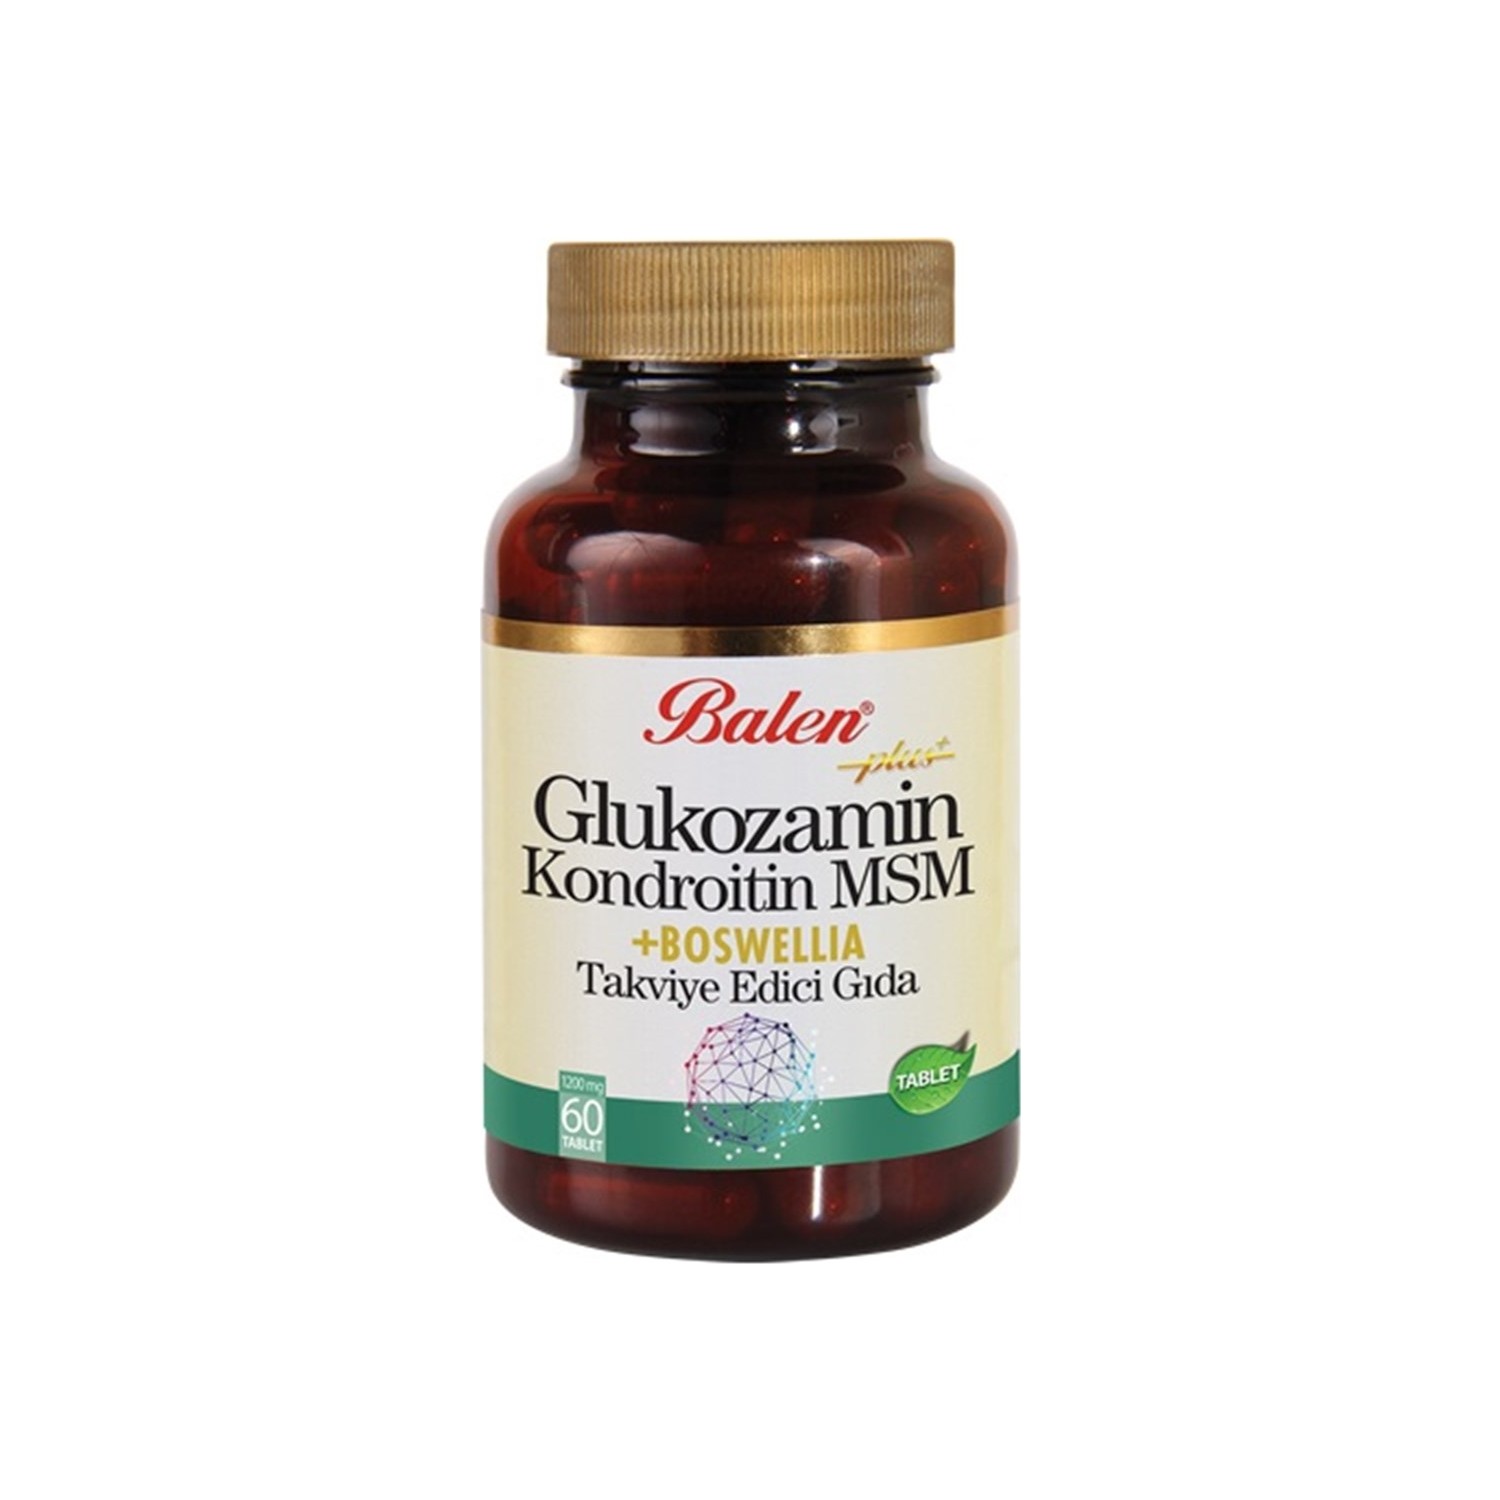 Активная добавка глюкозамин Balen Chondroitin Msm и Boswellia, 60 капсул, 1200 мг natural factors глюкозамин 500 мг хондроитин 400 мг 60 капсул